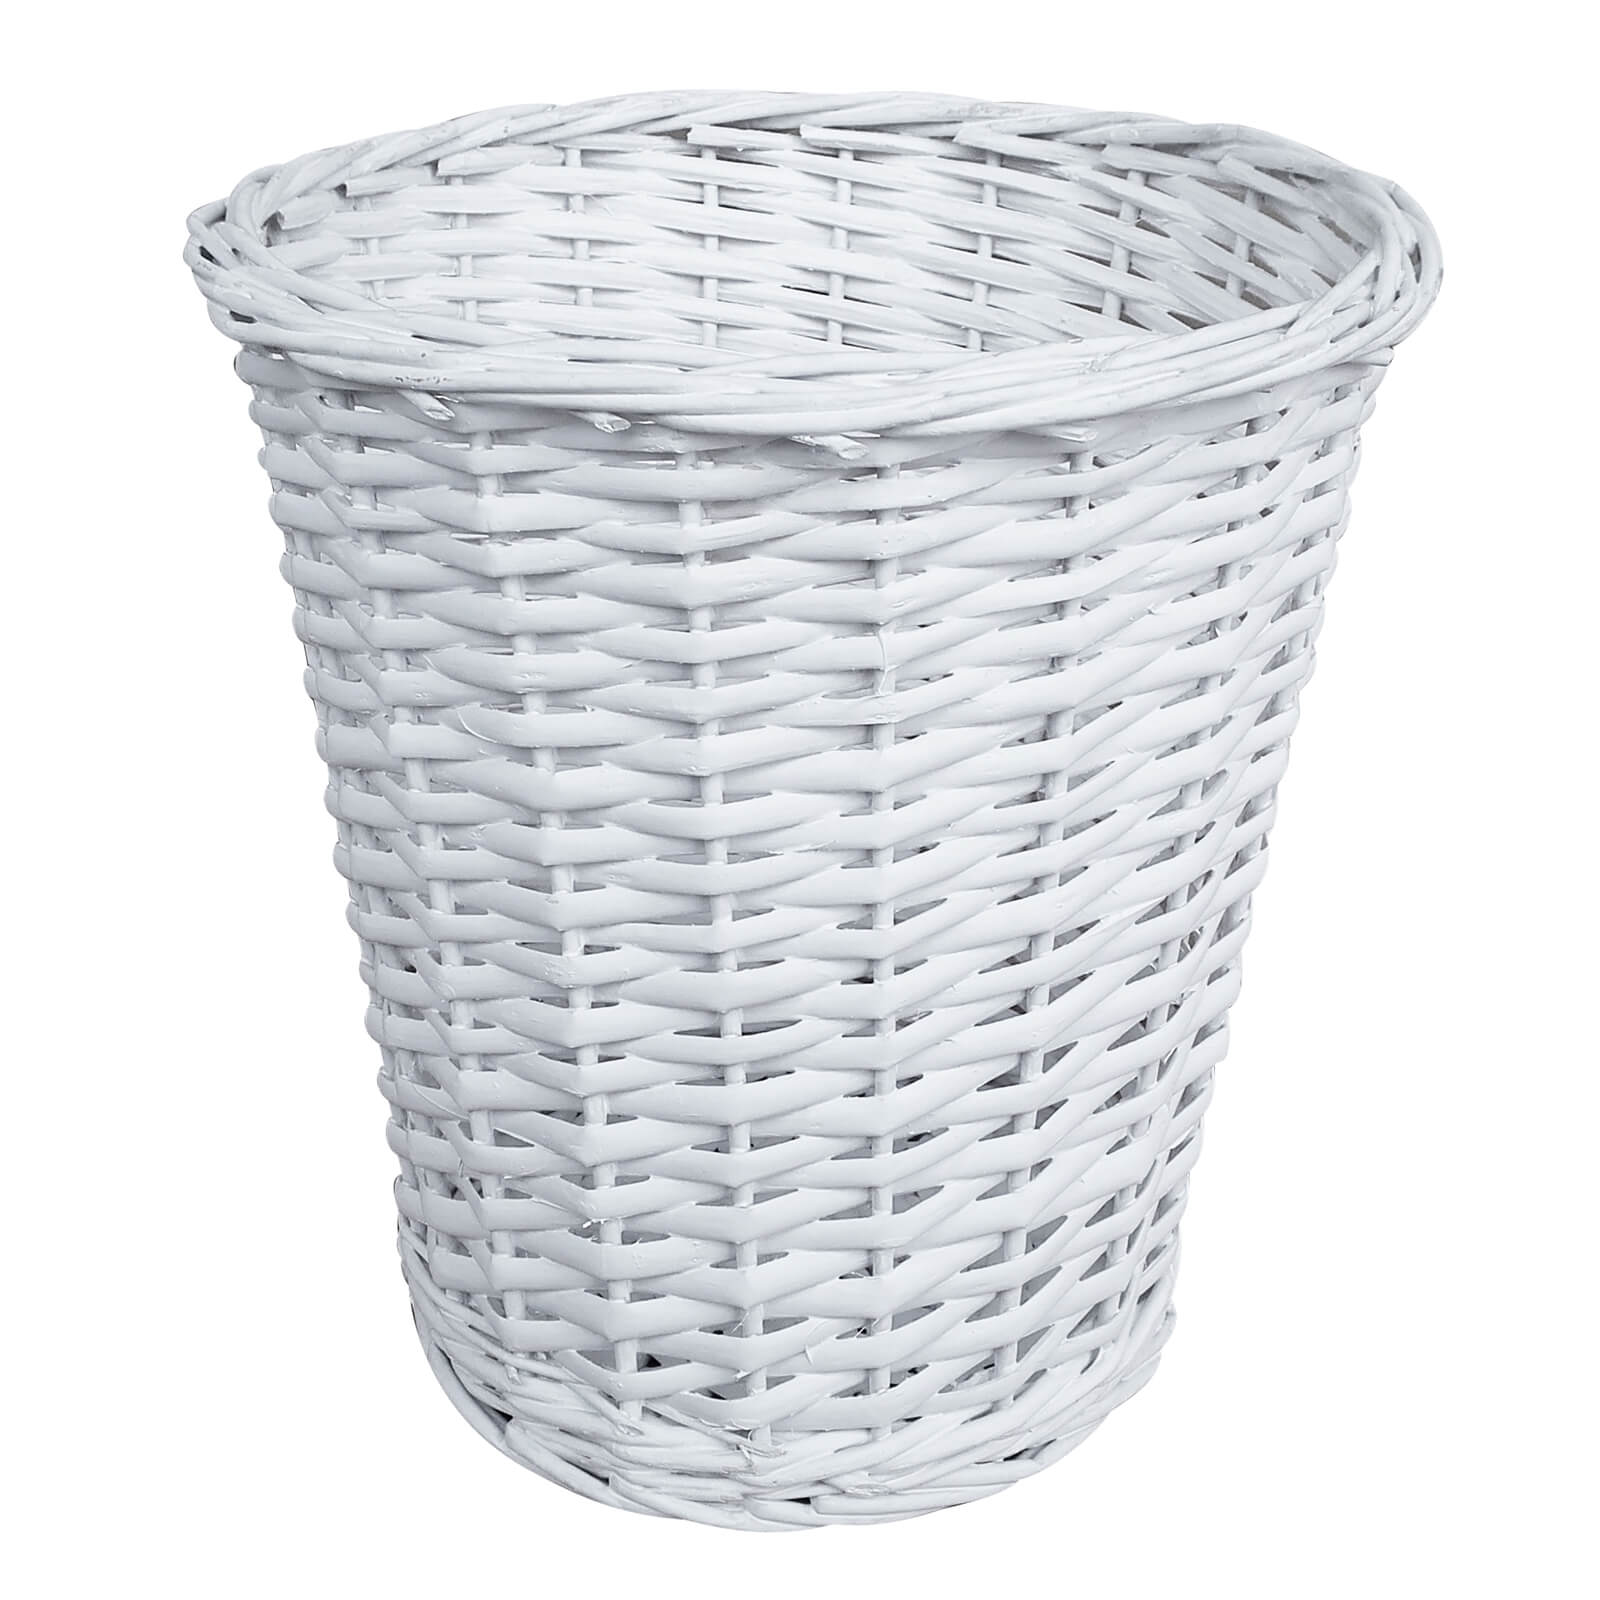 Wicker Bin/Basket - White